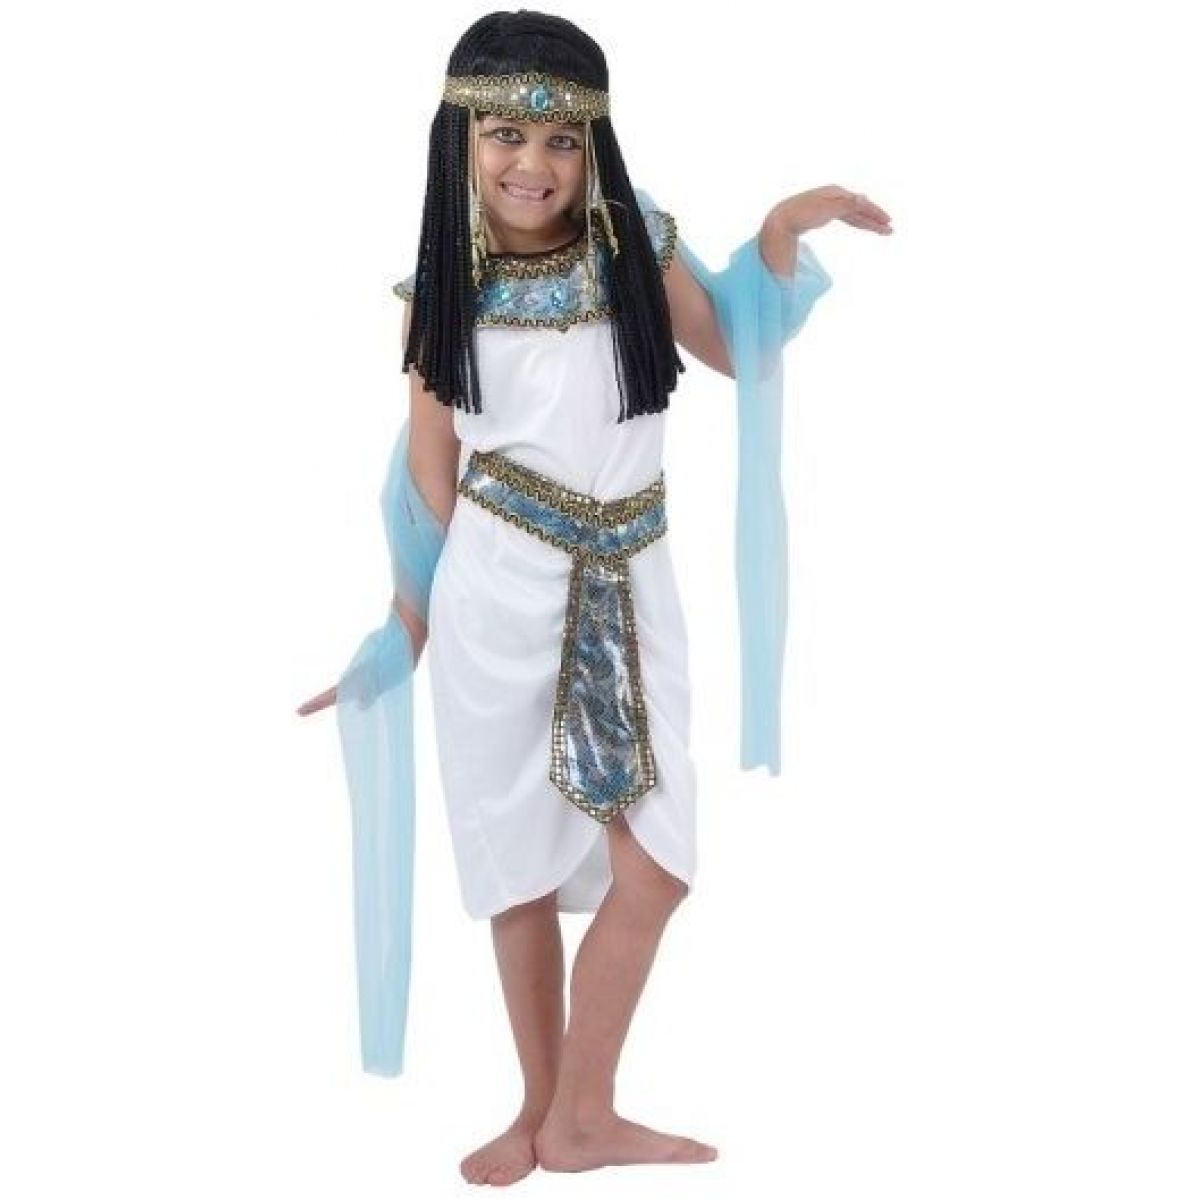 Made Dětský kostým Egyptská královna 120 - 130 cm